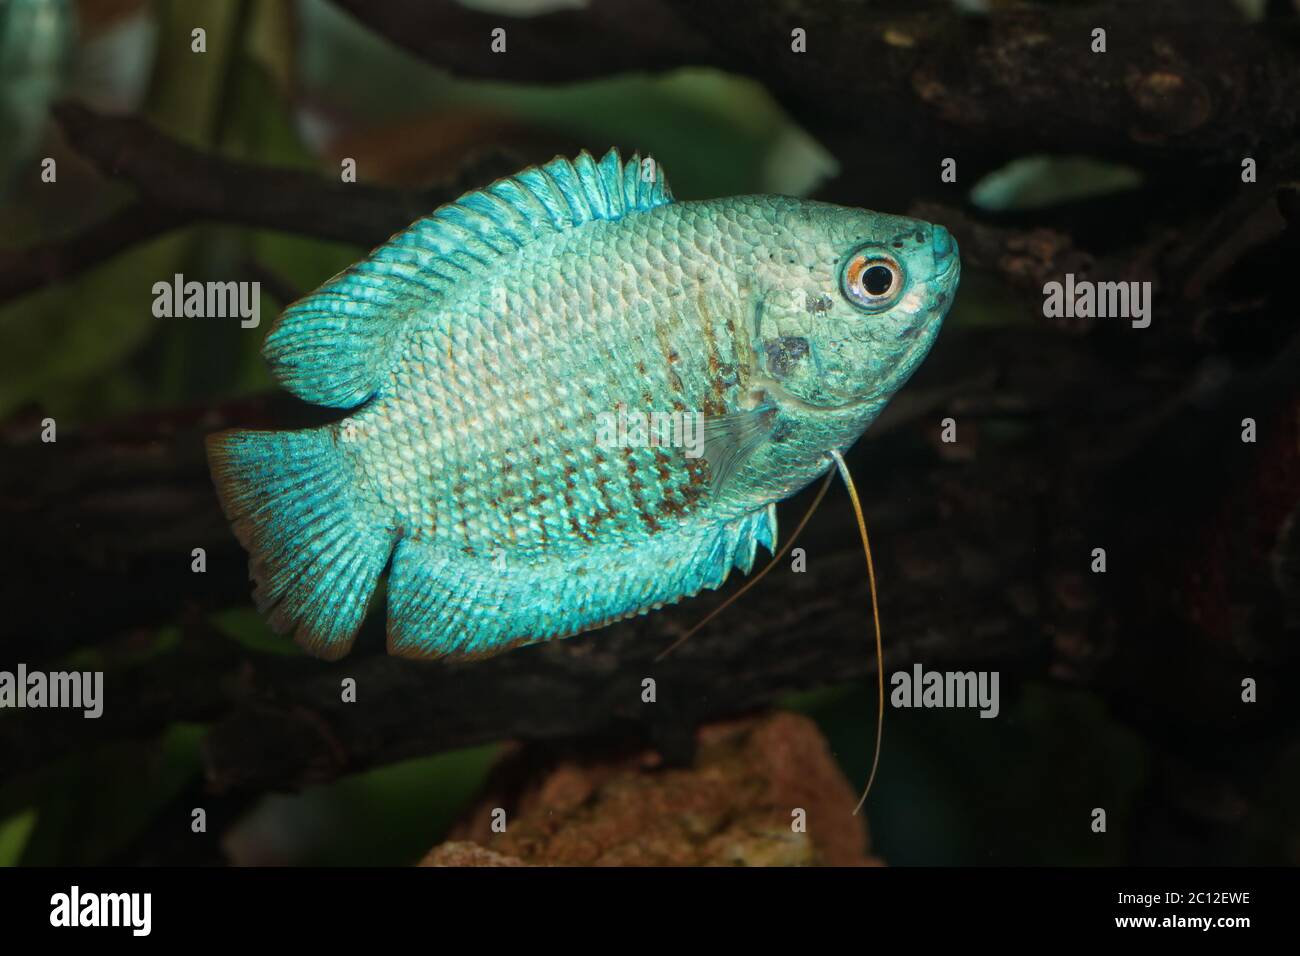 Portrait of fish from genus Trichogaster (Colisa) in aquarium Stock Photo